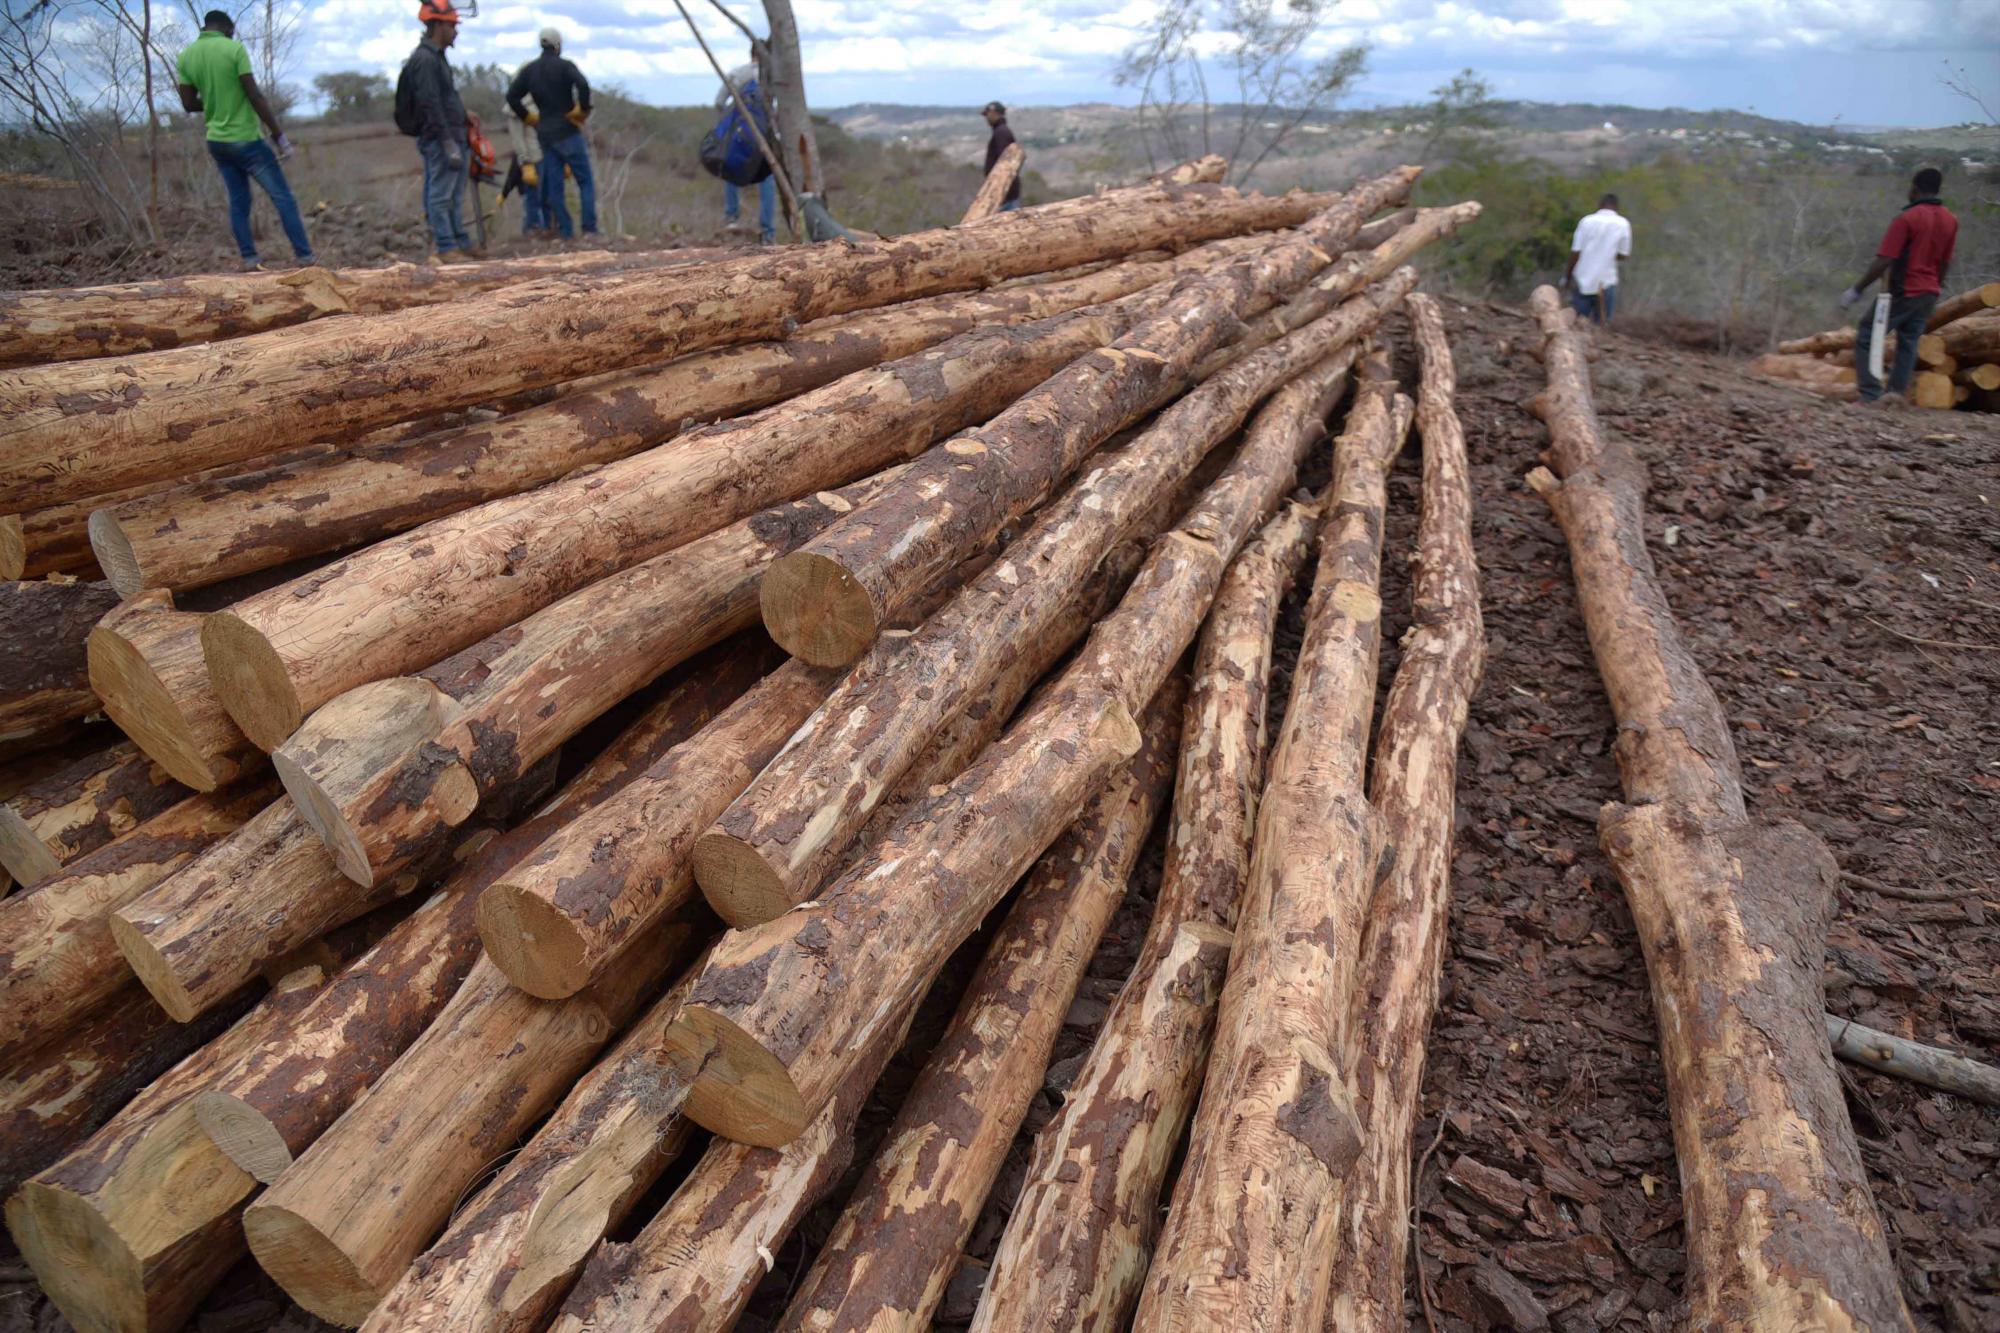 Parte de los árboles de pino cortados debido a la plaga de escarabajos que ha afectado a más de 30 mil árboles desde hace varios meses en el municipio de San José de las Matas. Martes 12 de marzo de 2019.